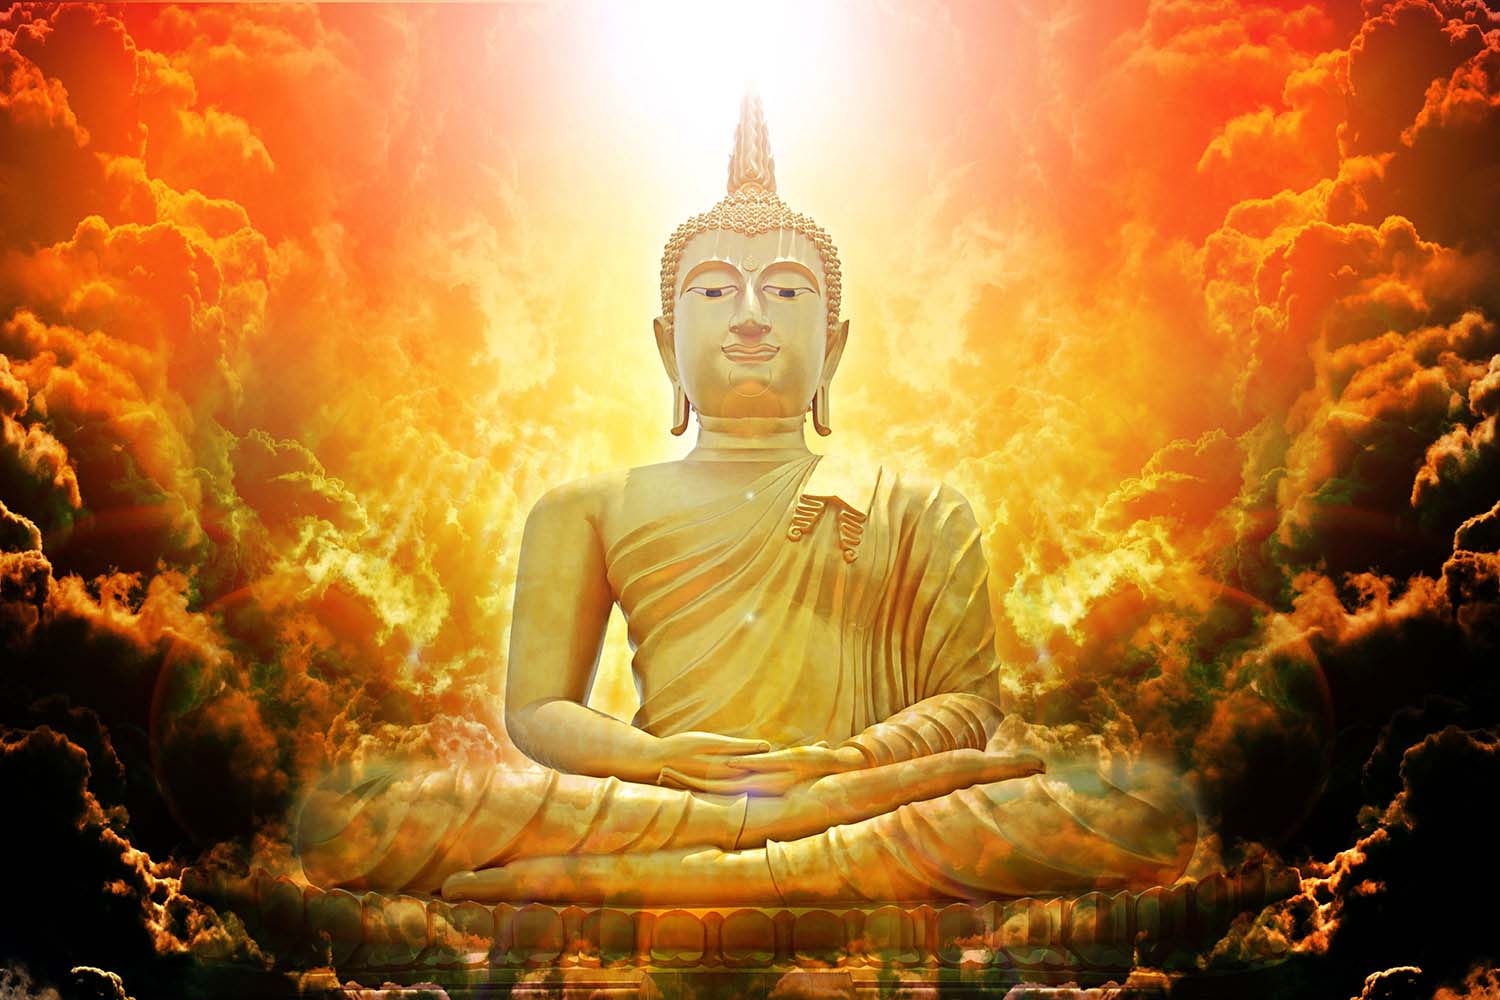 Ngũ uẩn là tập hợp năm ngạnh chính của Phật pháp, đem lại sức mạnh thanh tịnh cho tâm hồn chúng ta. Chiêm ngưỡng hình ảnh về Ngũ Uẩn, chúng ta sẽ cảm nhận được sự tinh thần cao siêu của đạo Phật và hiểu thêm về con đường làm người.